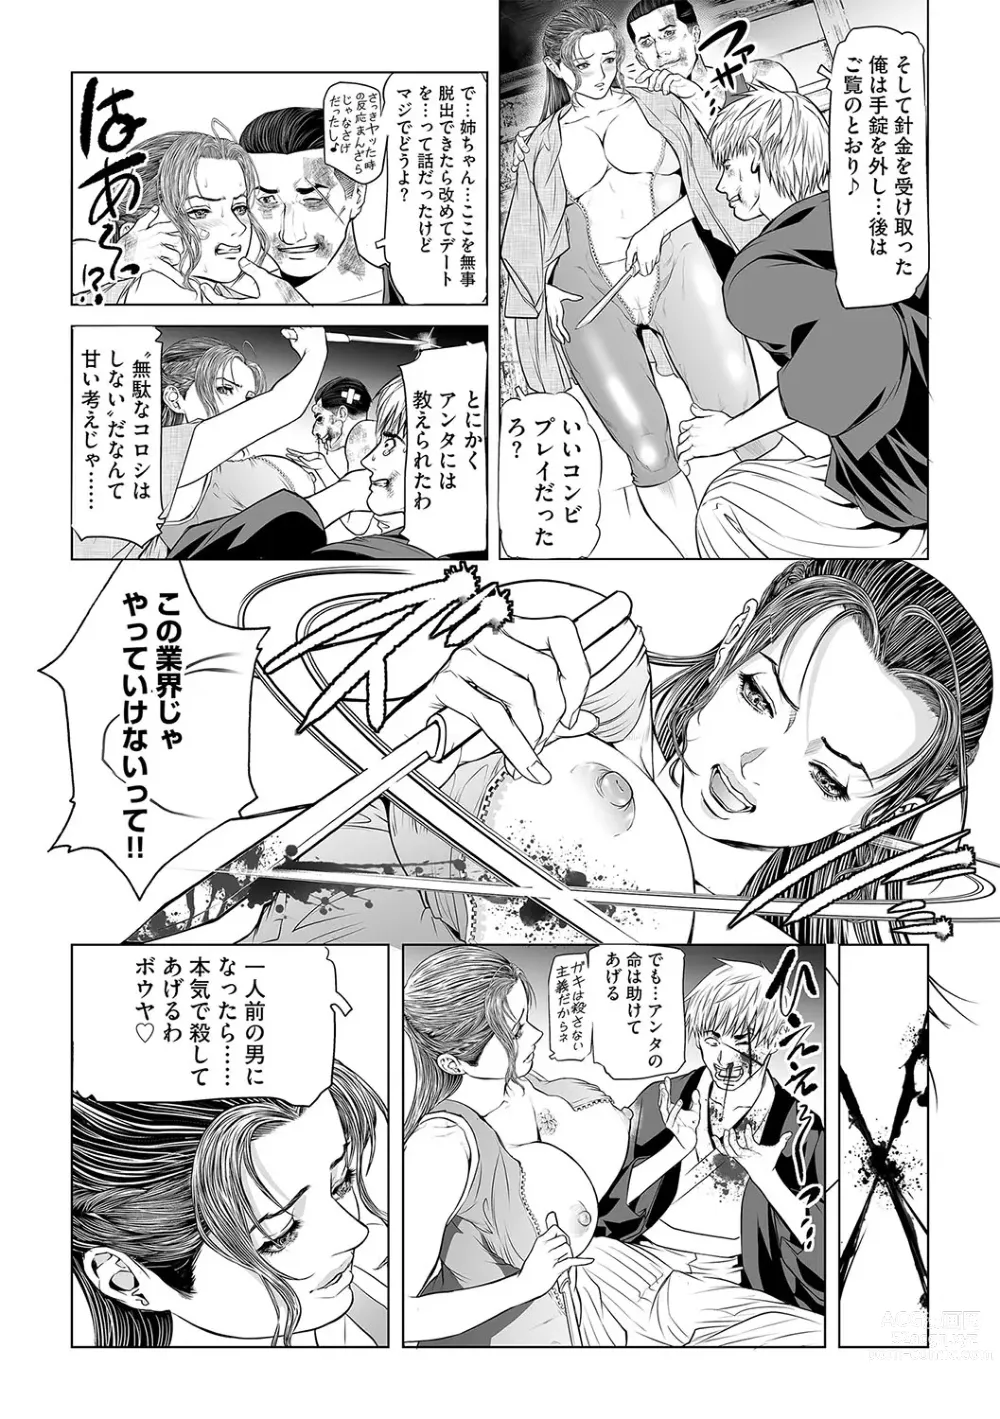 Page 21 of manga INGA Ch. 1